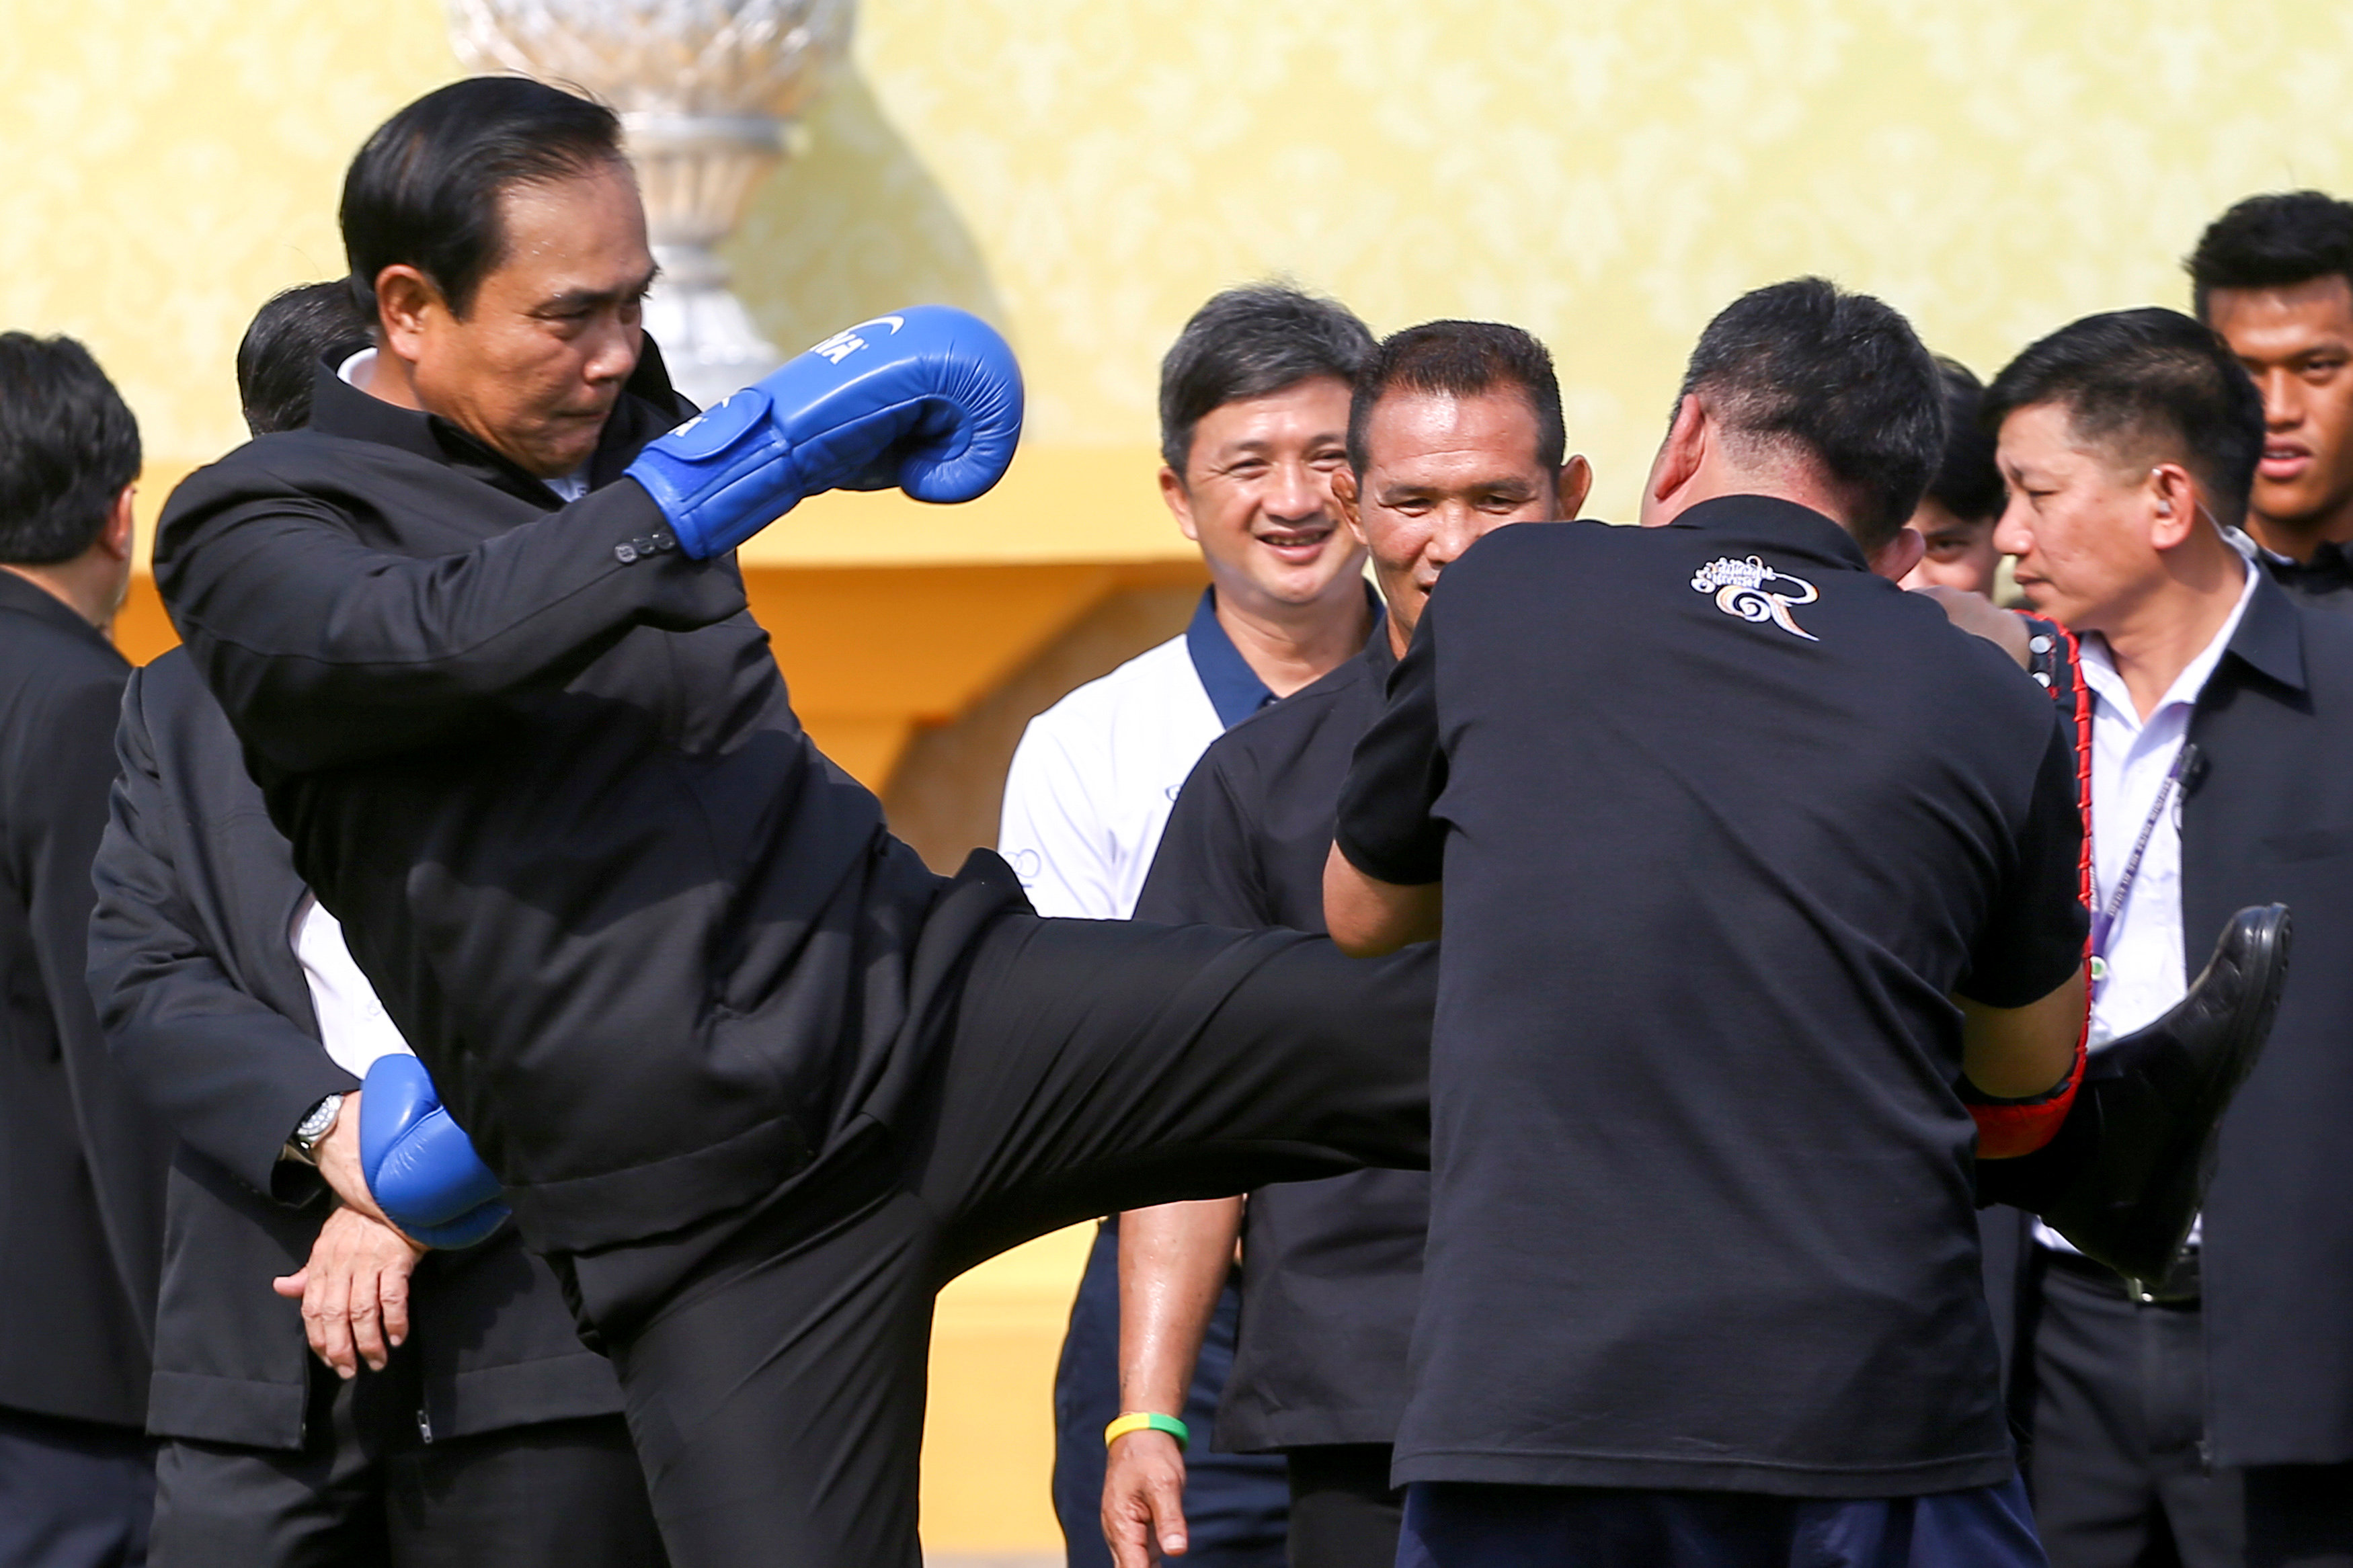 رئيس وزراء تايلاند يتدرب على الألعاب القتالية فى احتفال يوم الطفل بمقر الحكومة